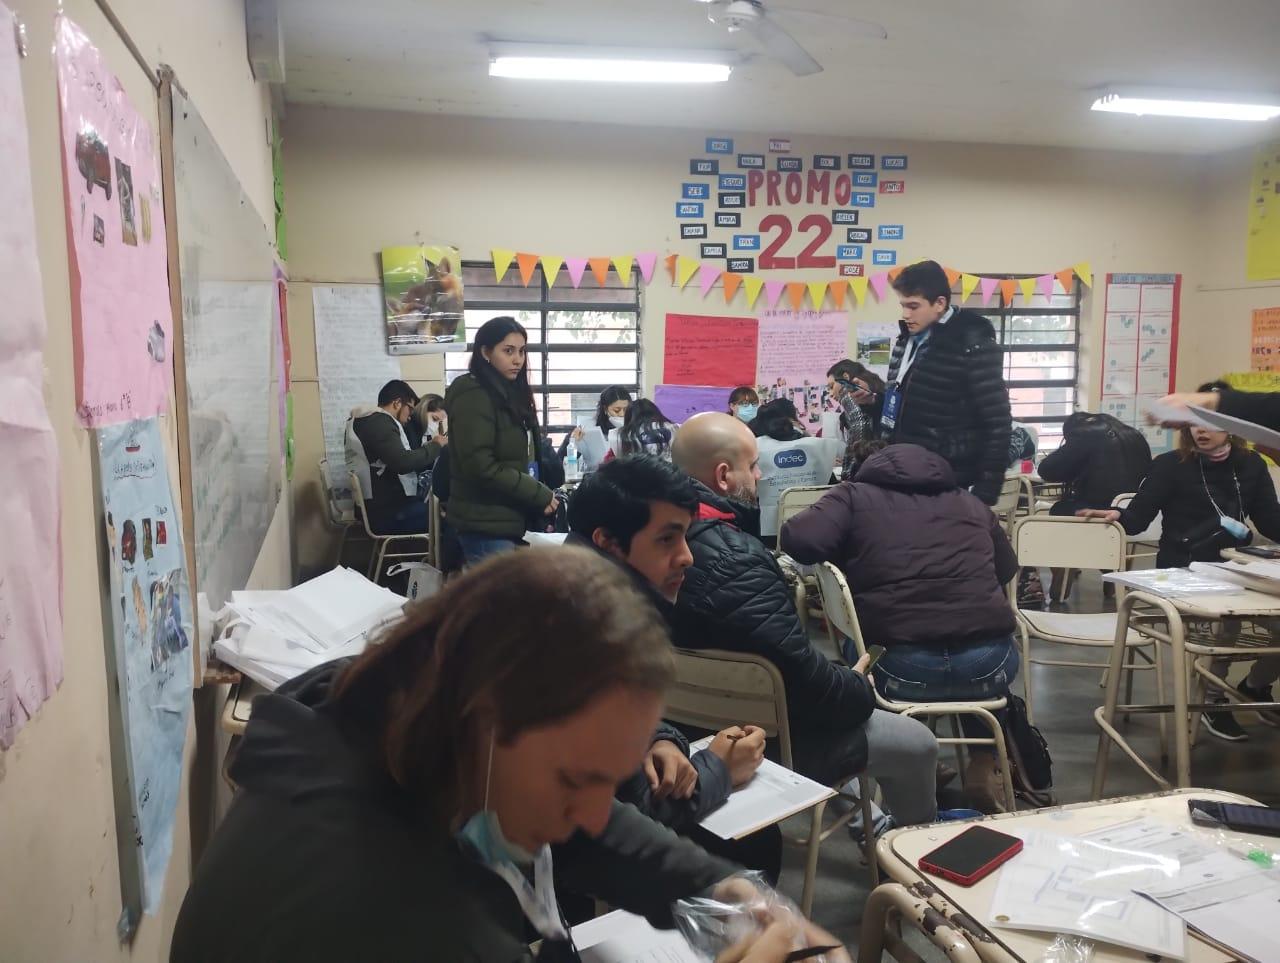 Censo en Tucumán: “Los jóvenes queremos cumplir con nuestro rol ciudadano”